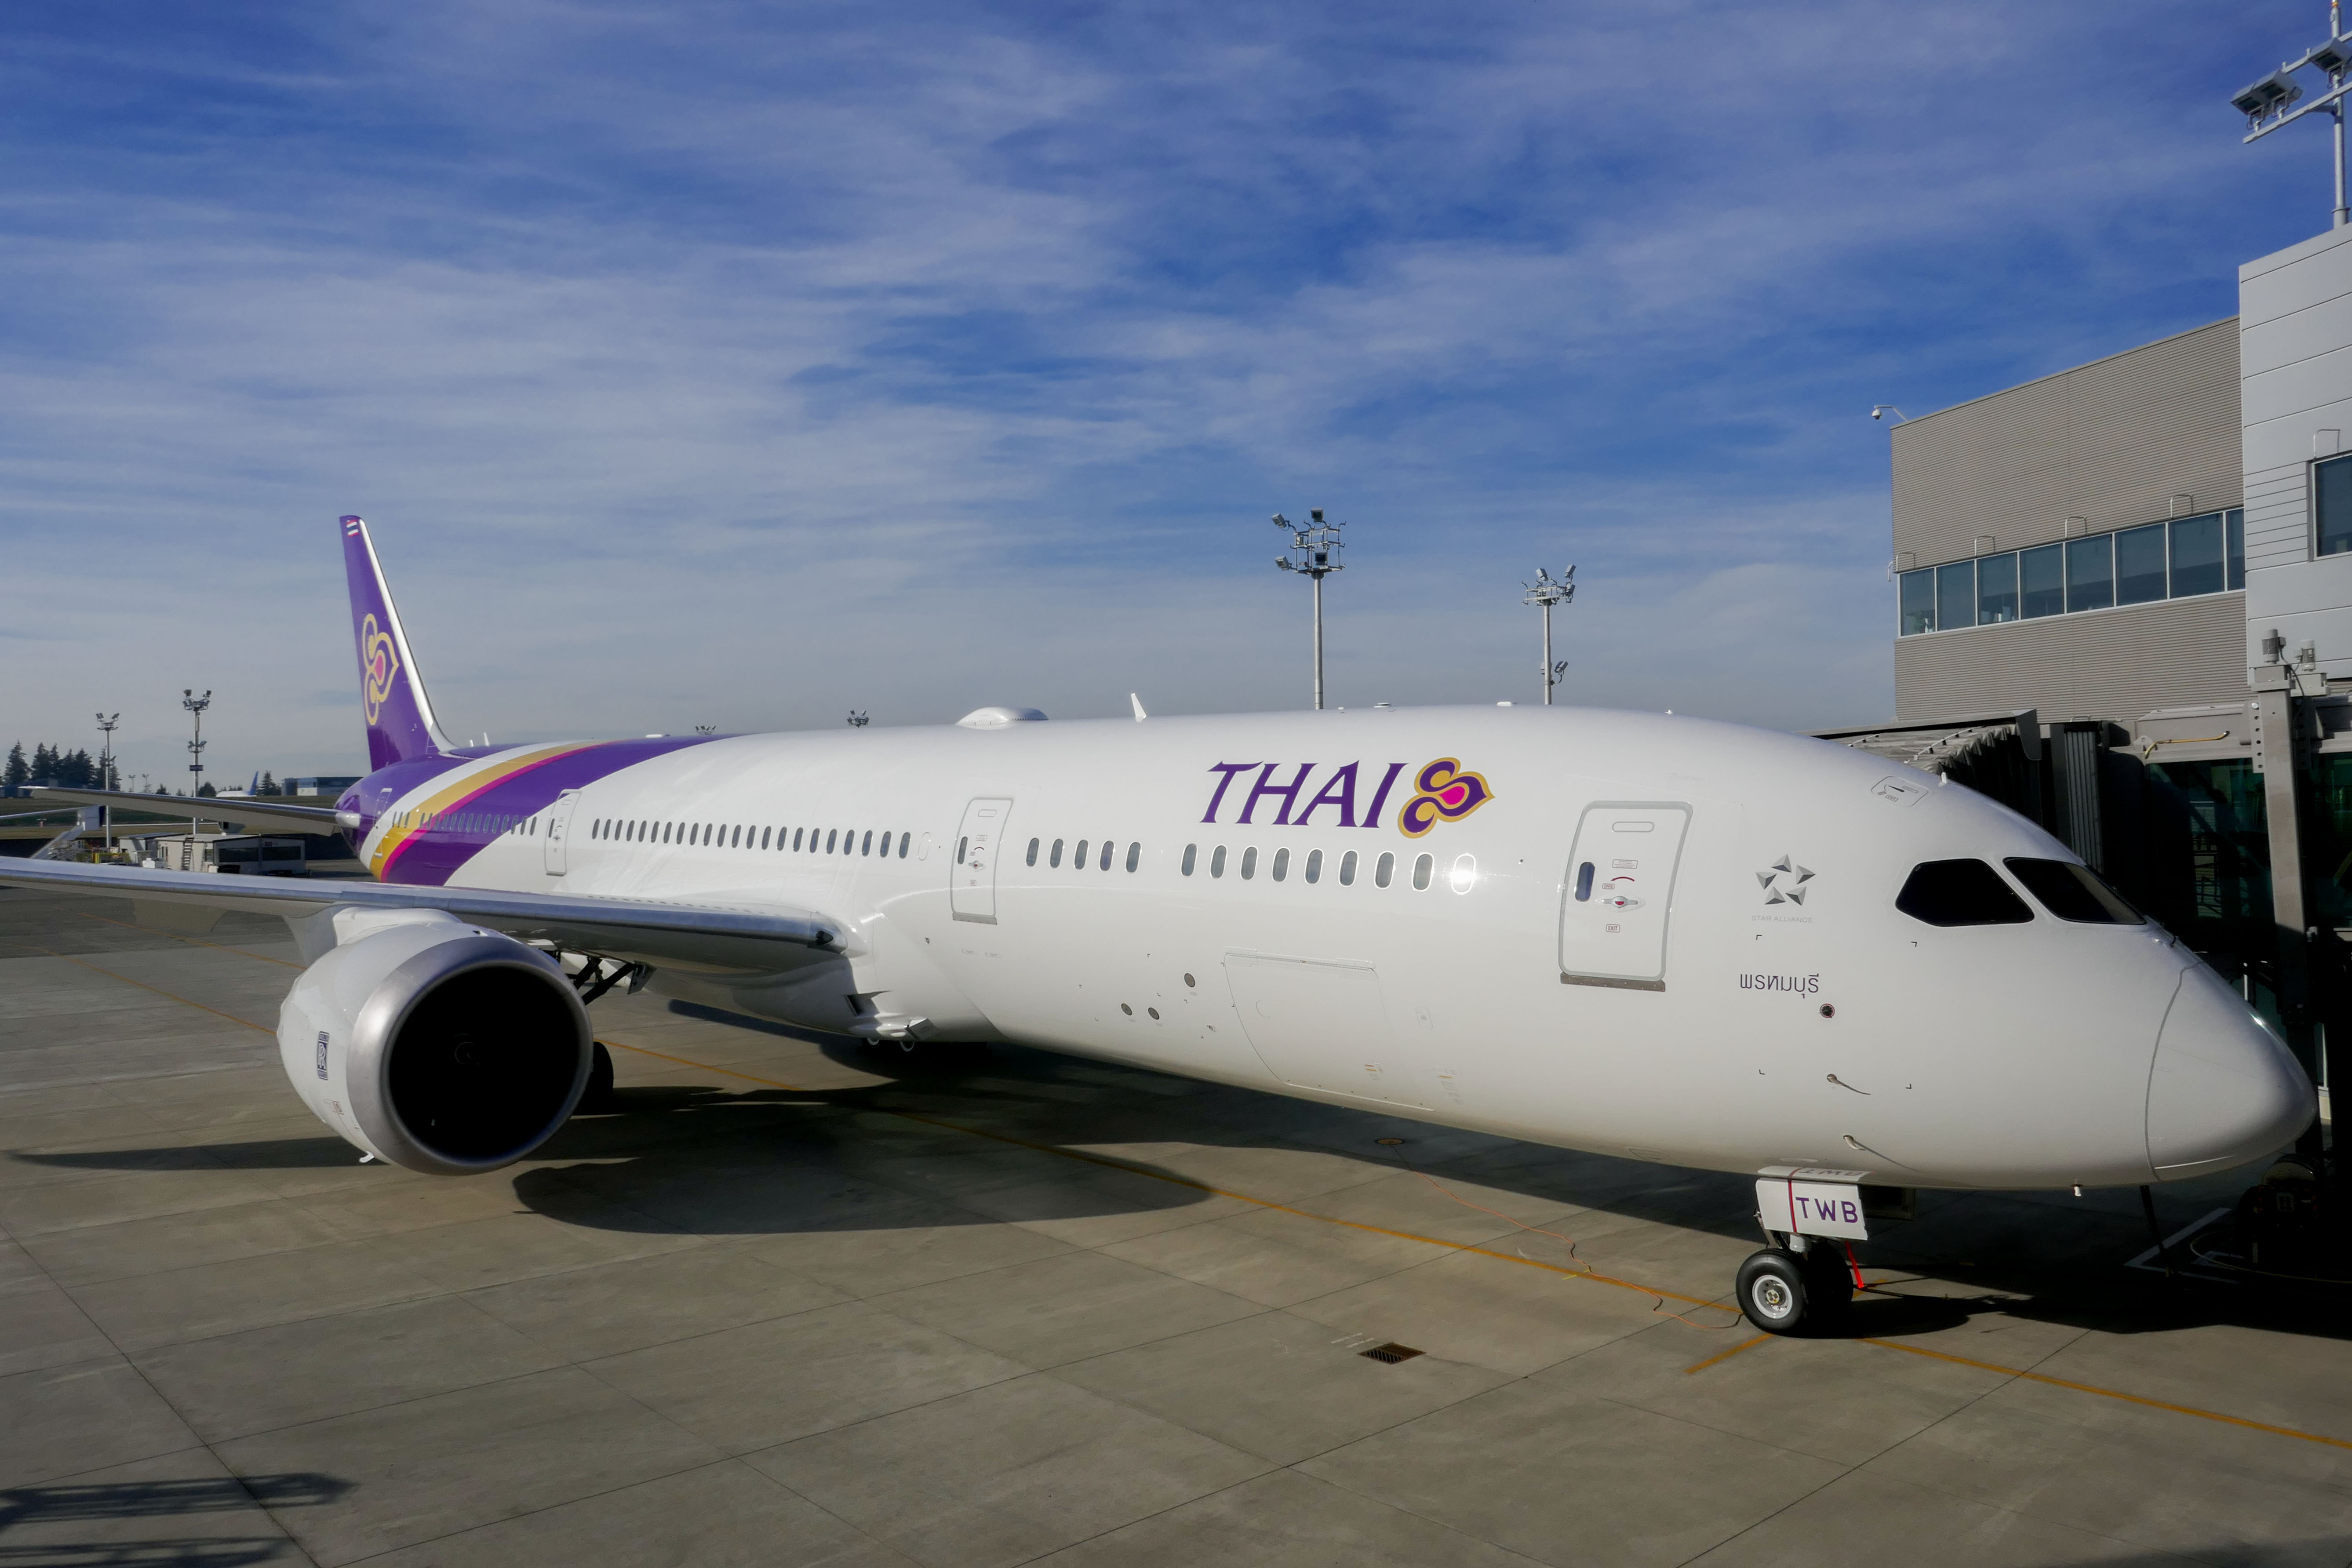 ชมโรงงาน Boeing พร้อมพาเครื่องการบินไทยลำใหม่กลับกรุงเทพ!